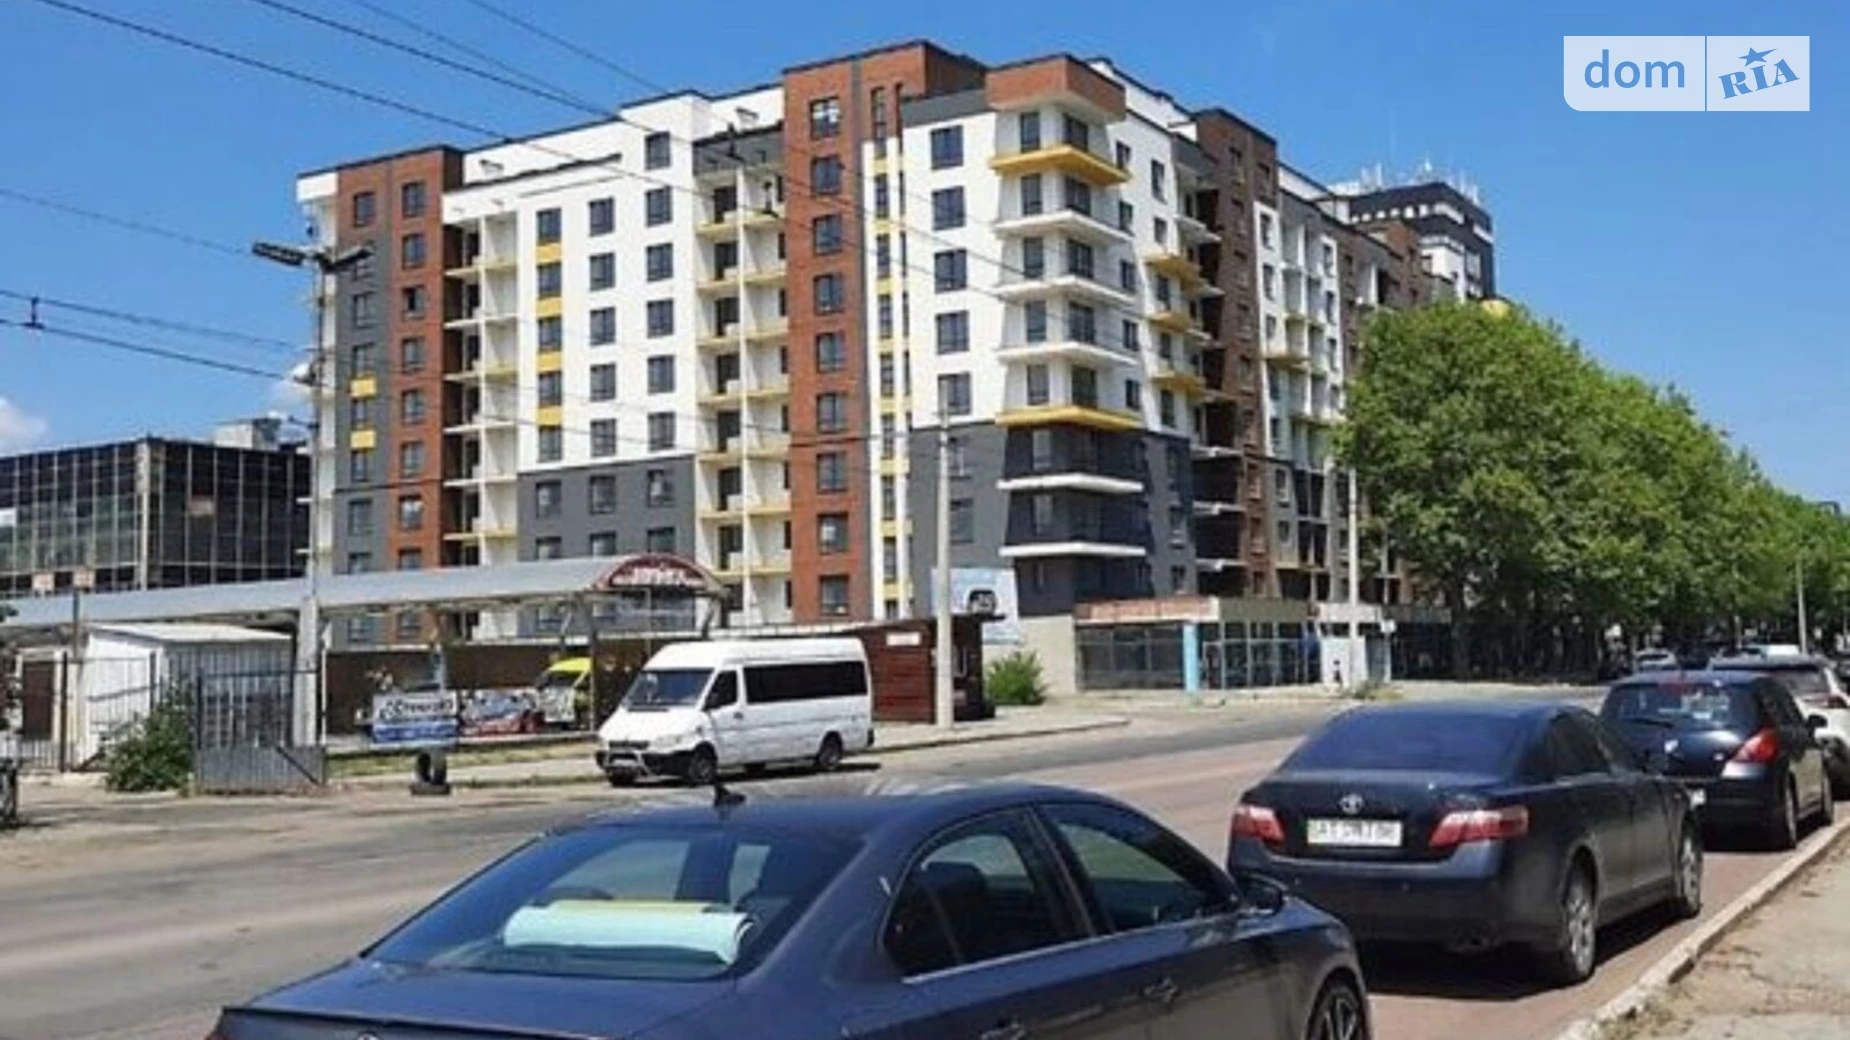 Продается 4-комнатная квартира 124 кв. м в Ивано-Франковске, вул. Вовчинецька